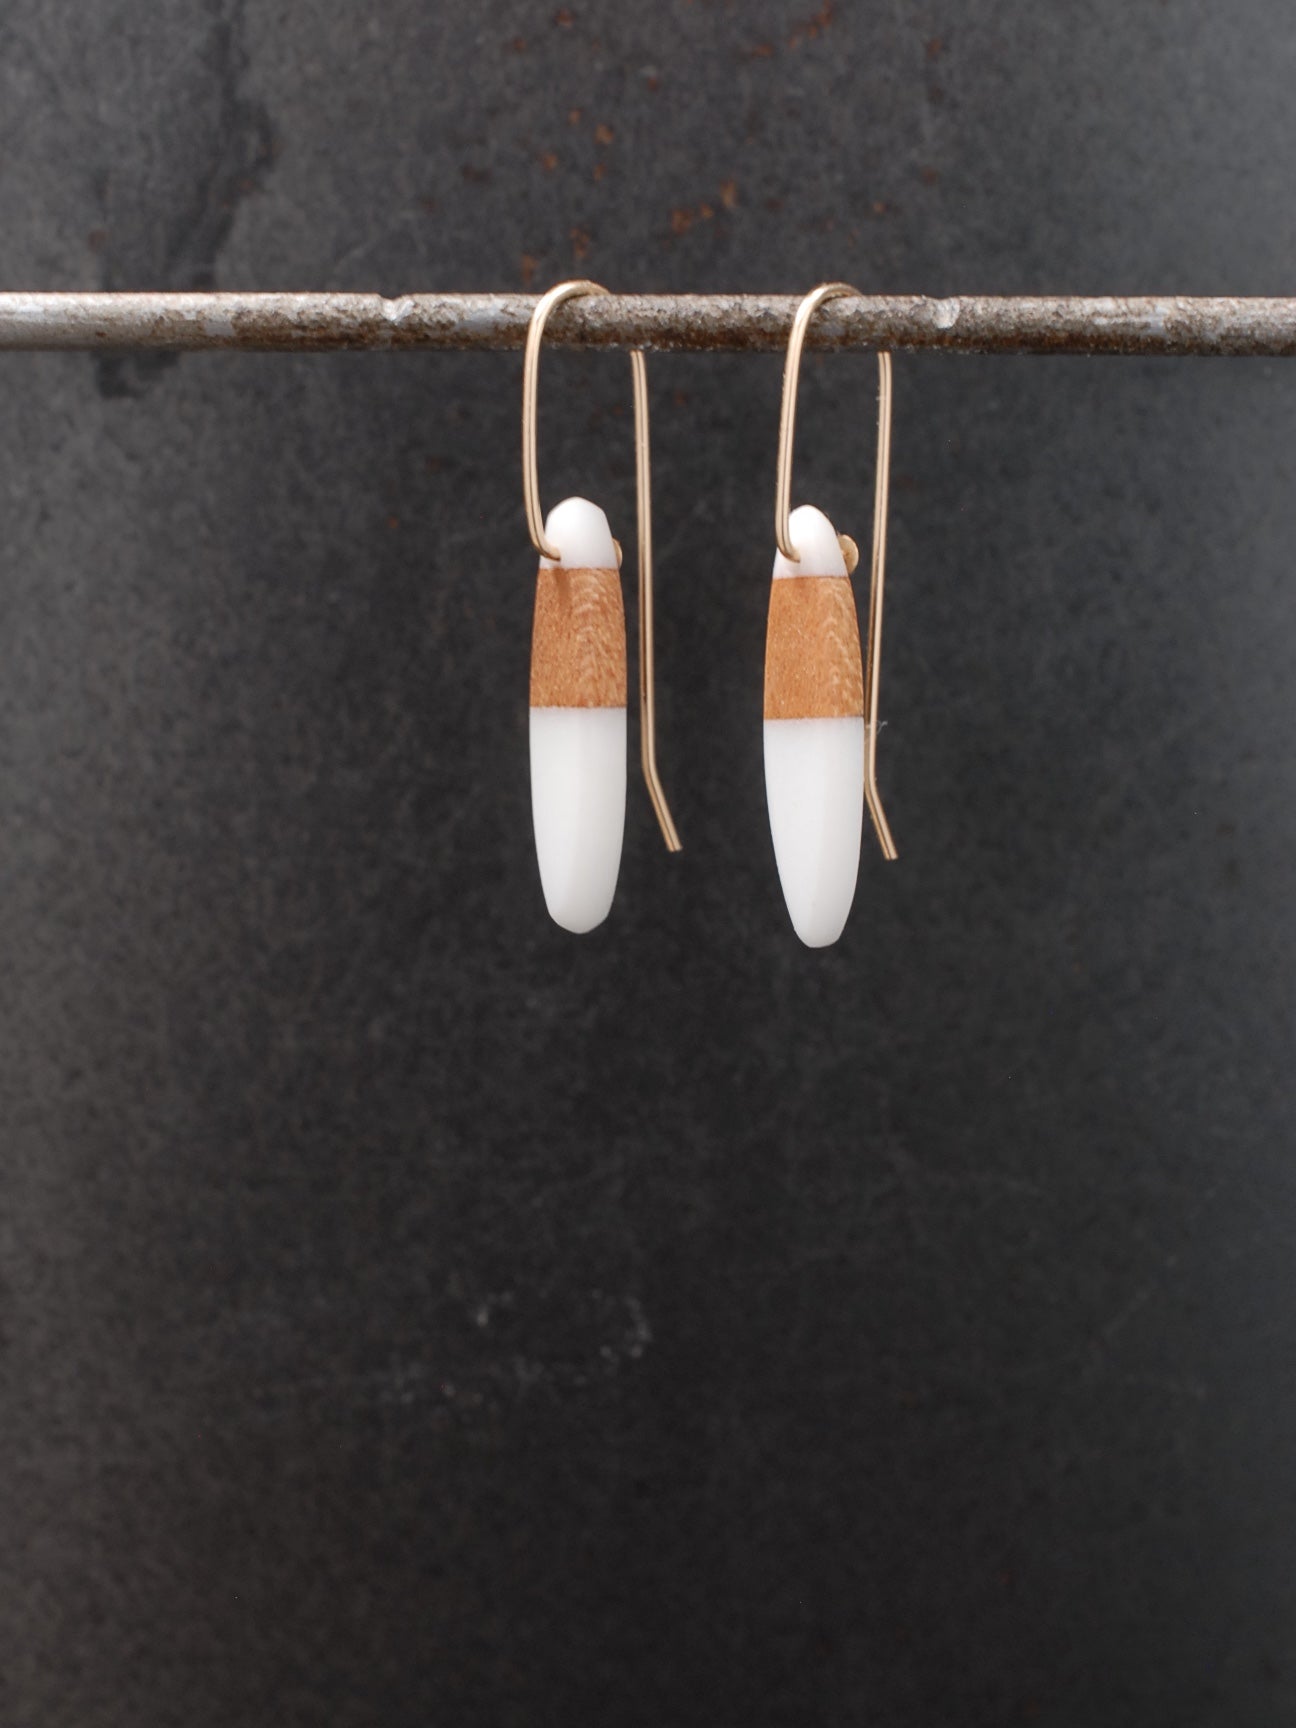 Black & White Clay Earrings – DearBritt Jewelry Designs